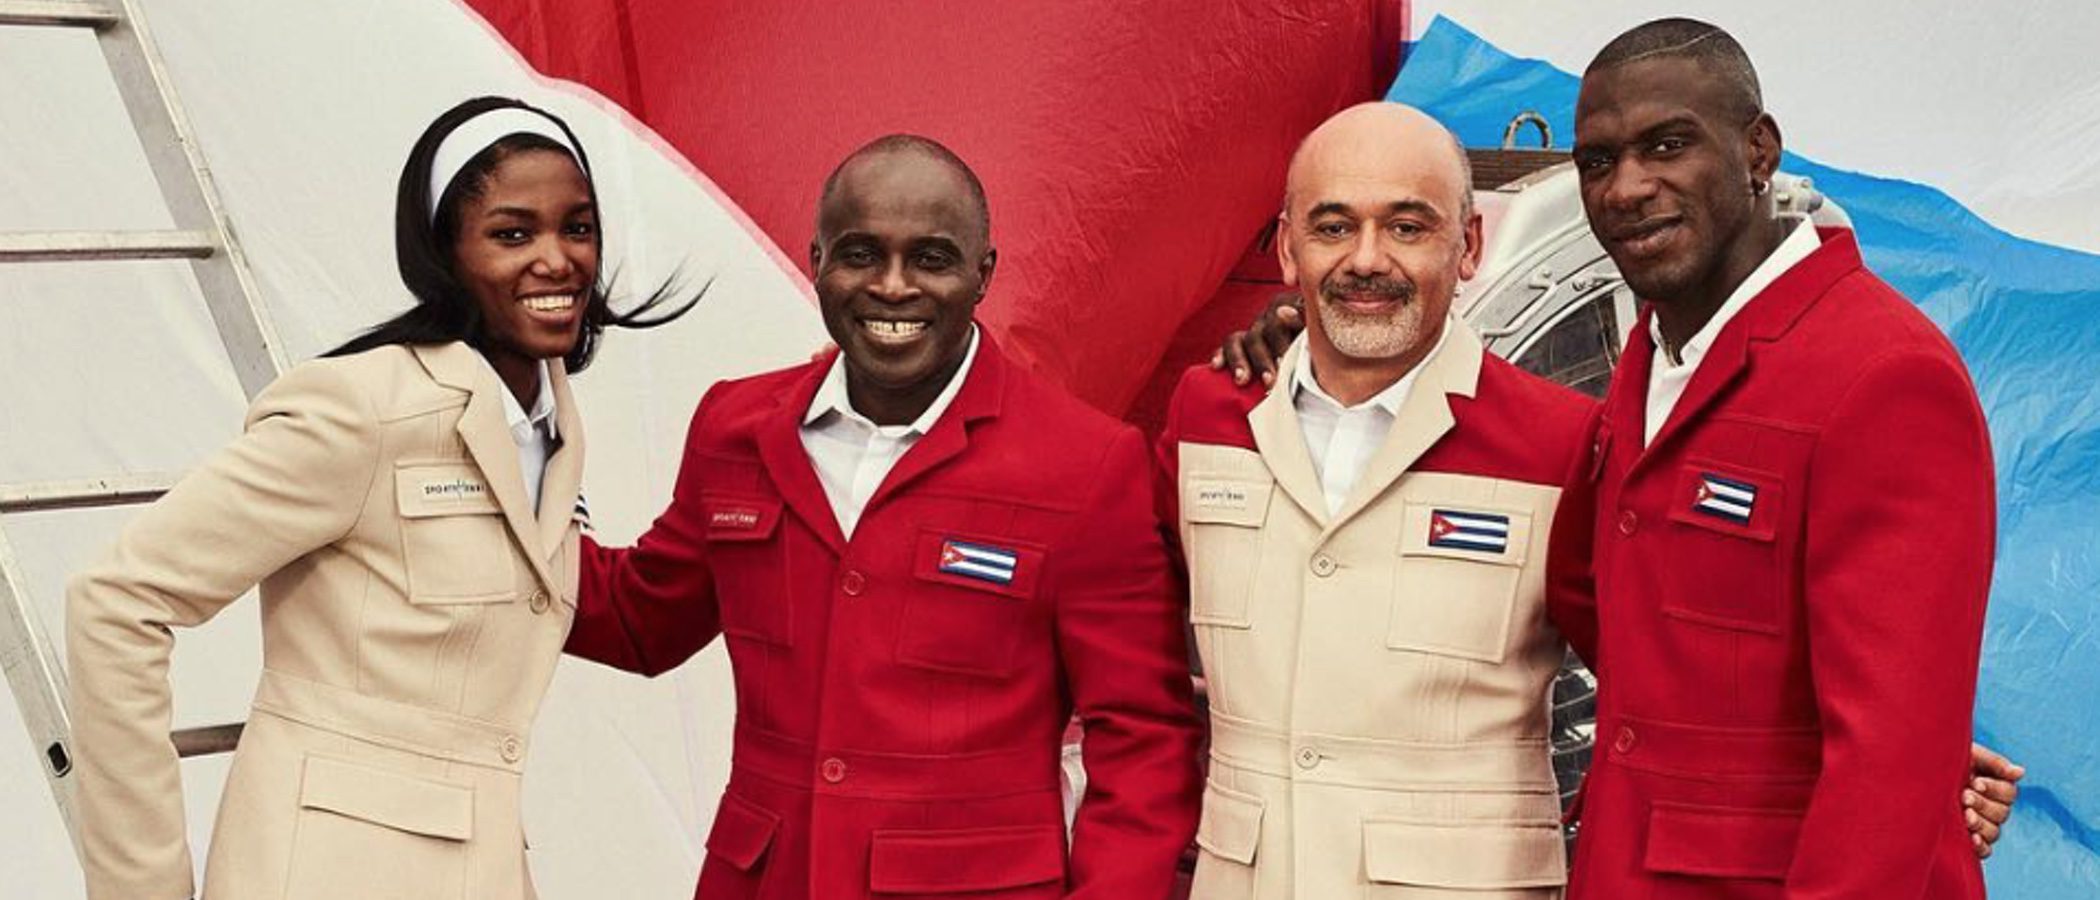 Cuba tendrá un nuevo uniforme para los Juegos Olímpicos de Río 2016 diseñado por Christian Louboutin